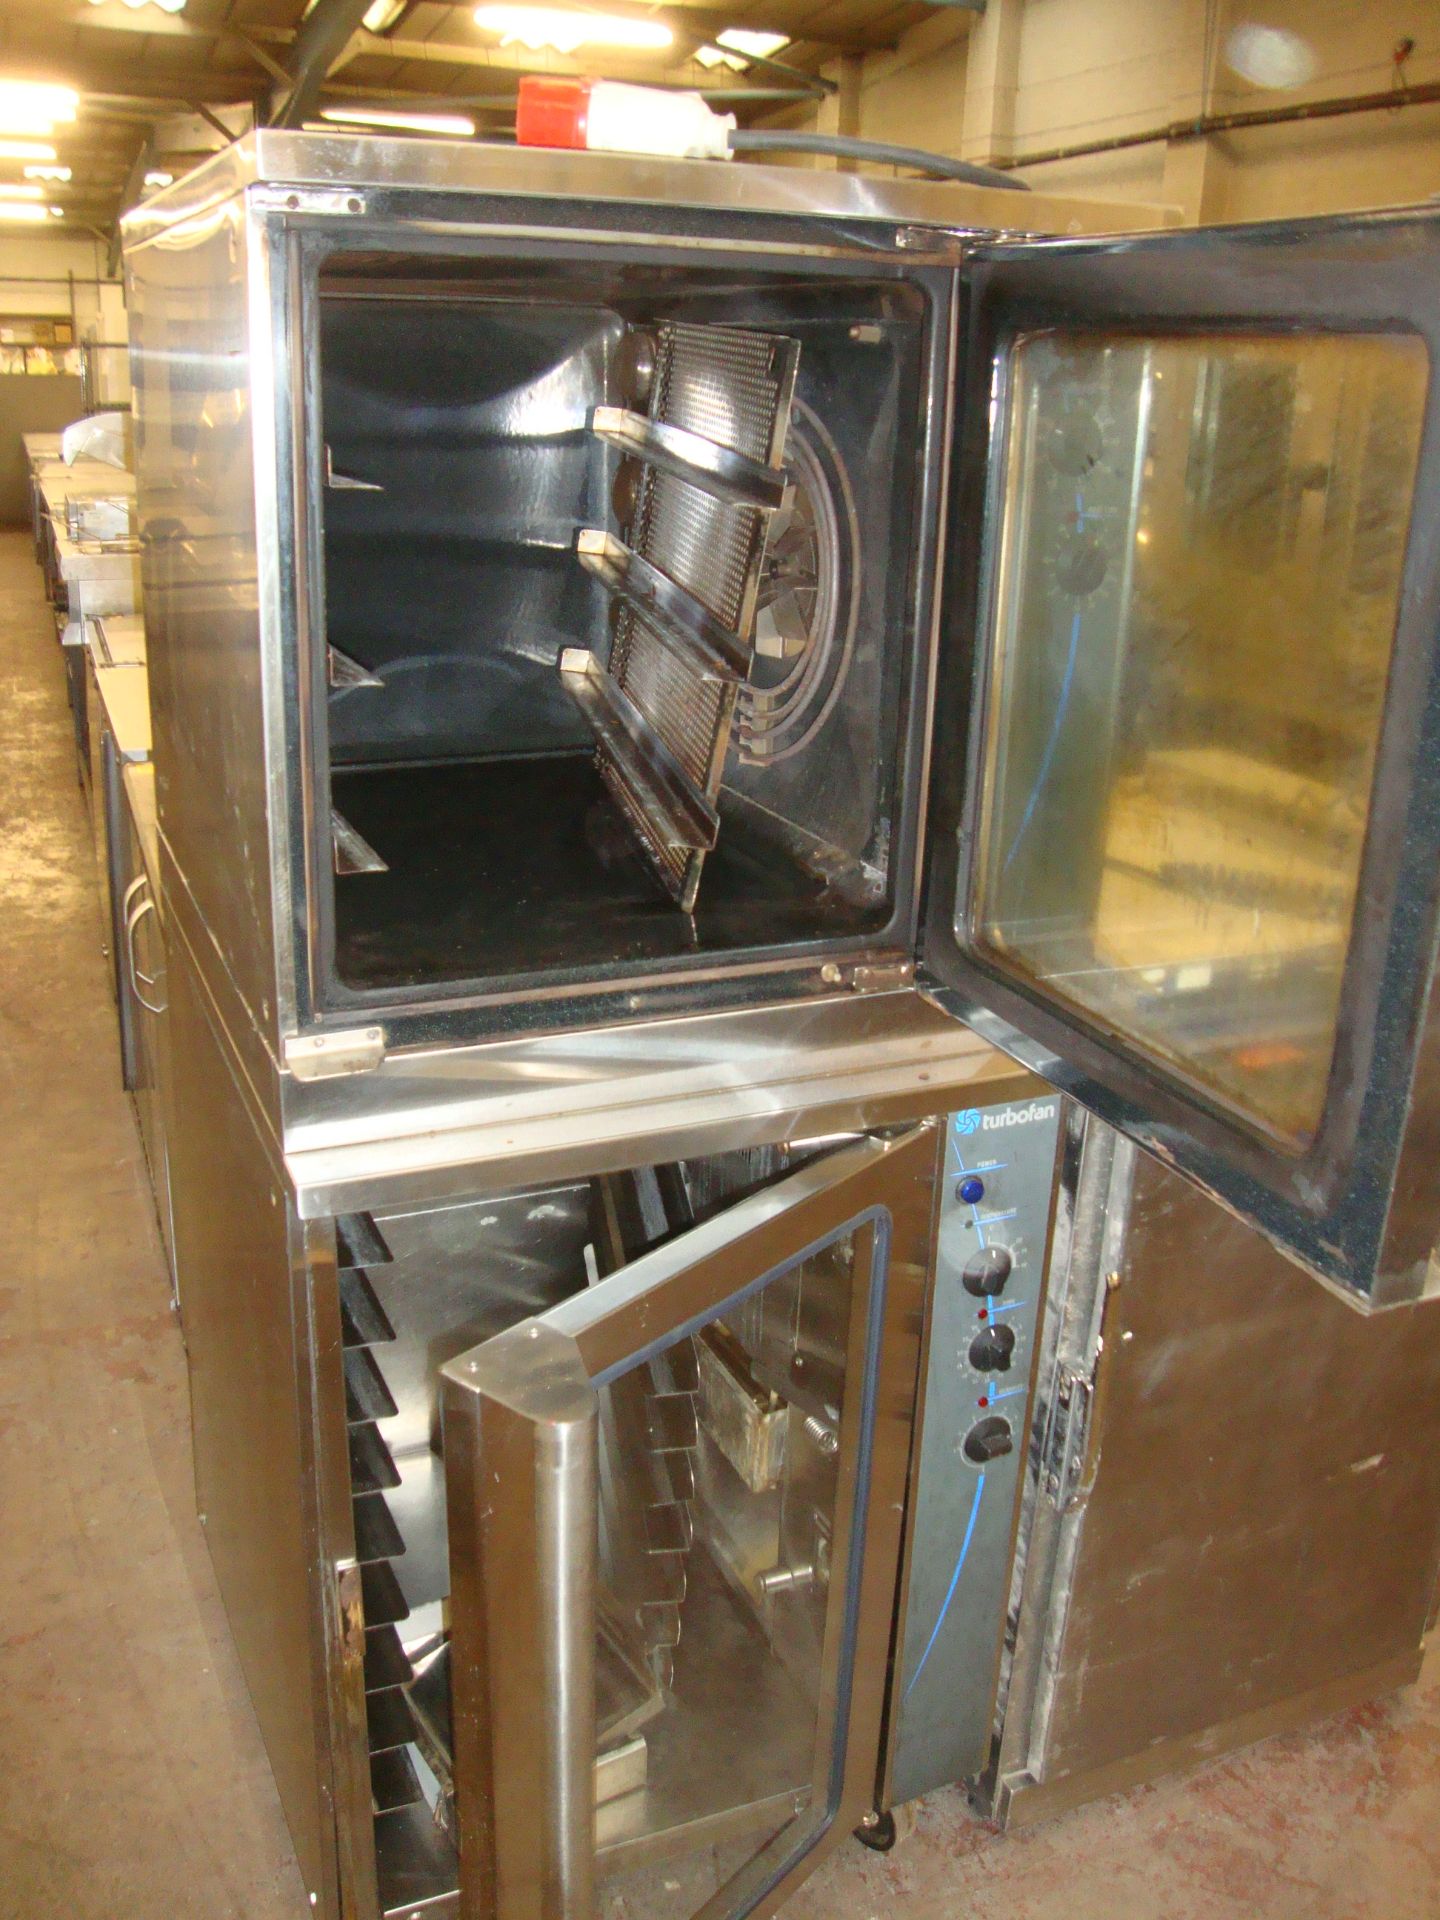 Moffat E32 Sub turbo fan sub 32 twin oven system - Image 2 of 5